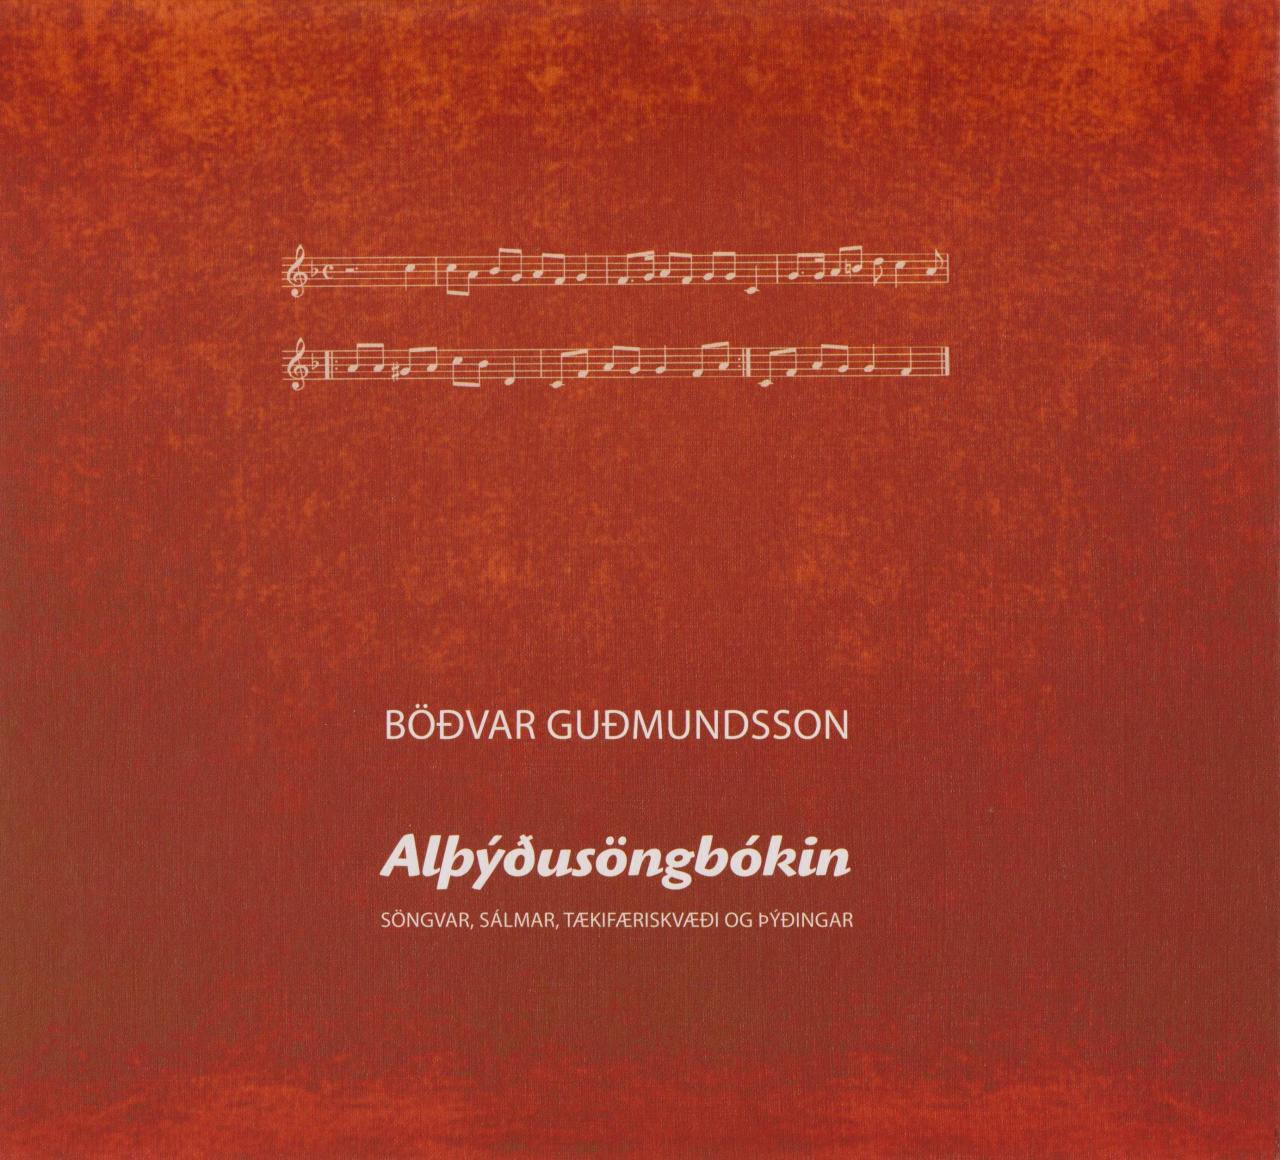 Alþýðusöngbókin: söngvar, tækifæriskvæði, sálmar og þýðingar